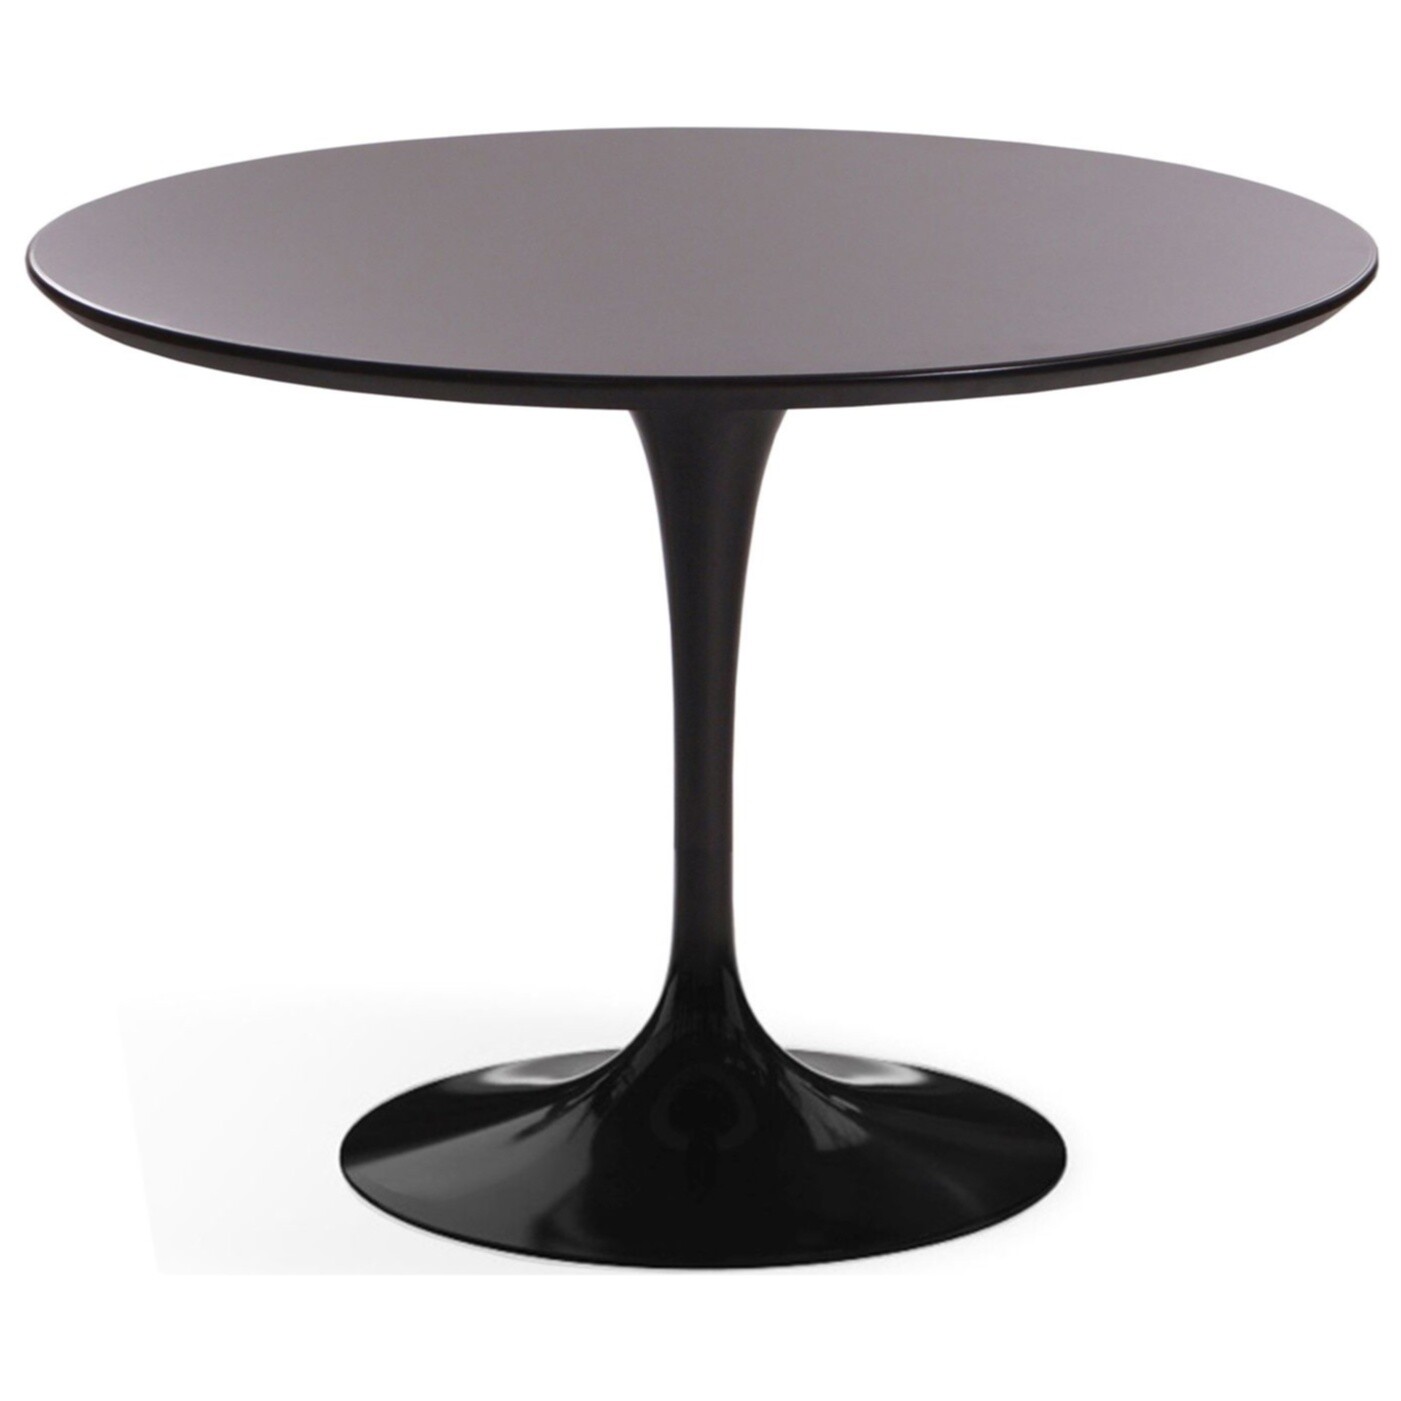 Обеденный стол круглый черный глянцевый 100 см Apriori T